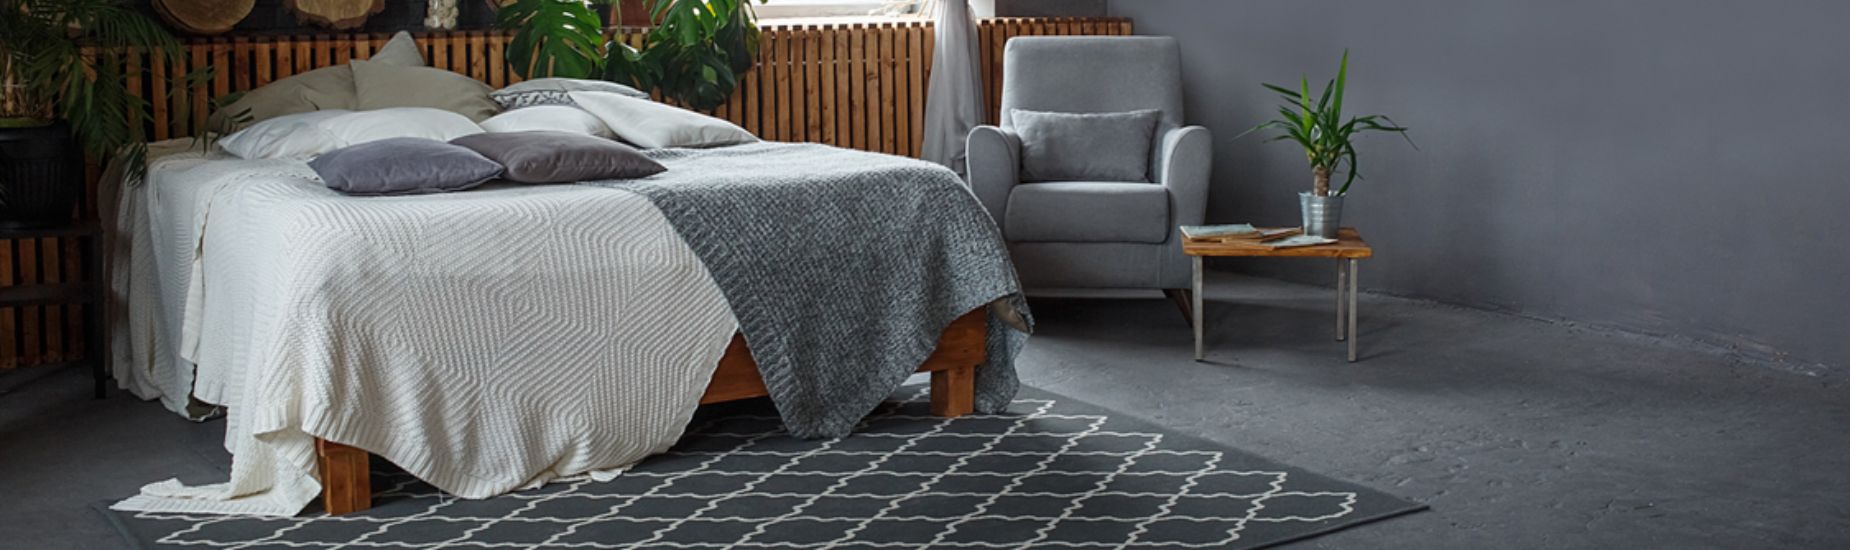 Grand tapis nordique doux de luxe pour salon, décor abstrait, gris, jaune,  lea, chambre à coucher, polymère de sol moderne, maison, 200x300